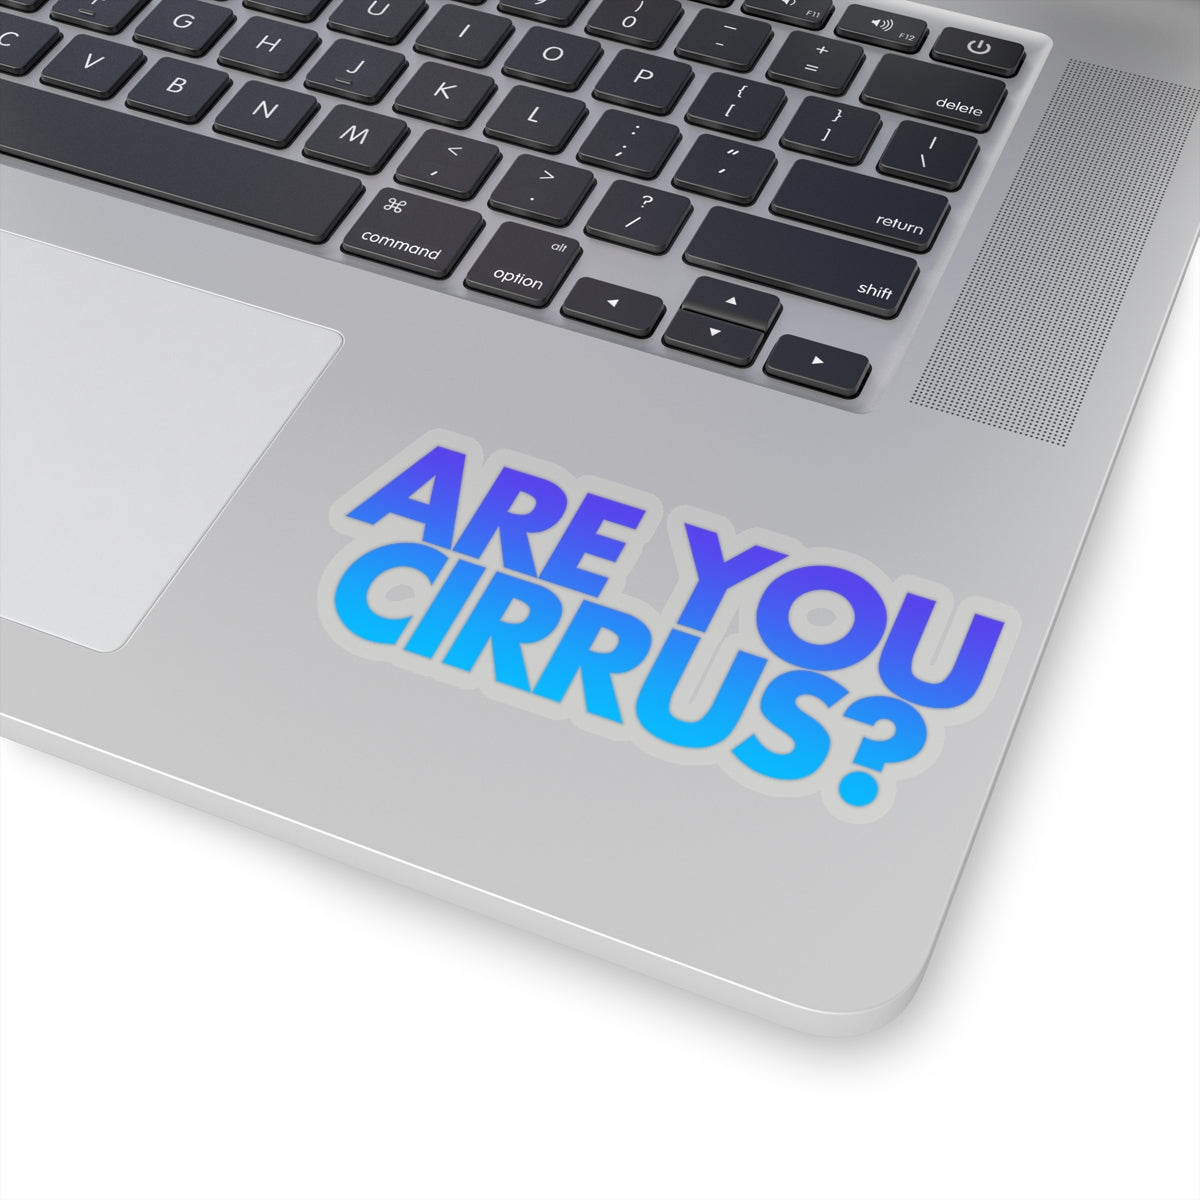 Are You Cirrus? Sticker 